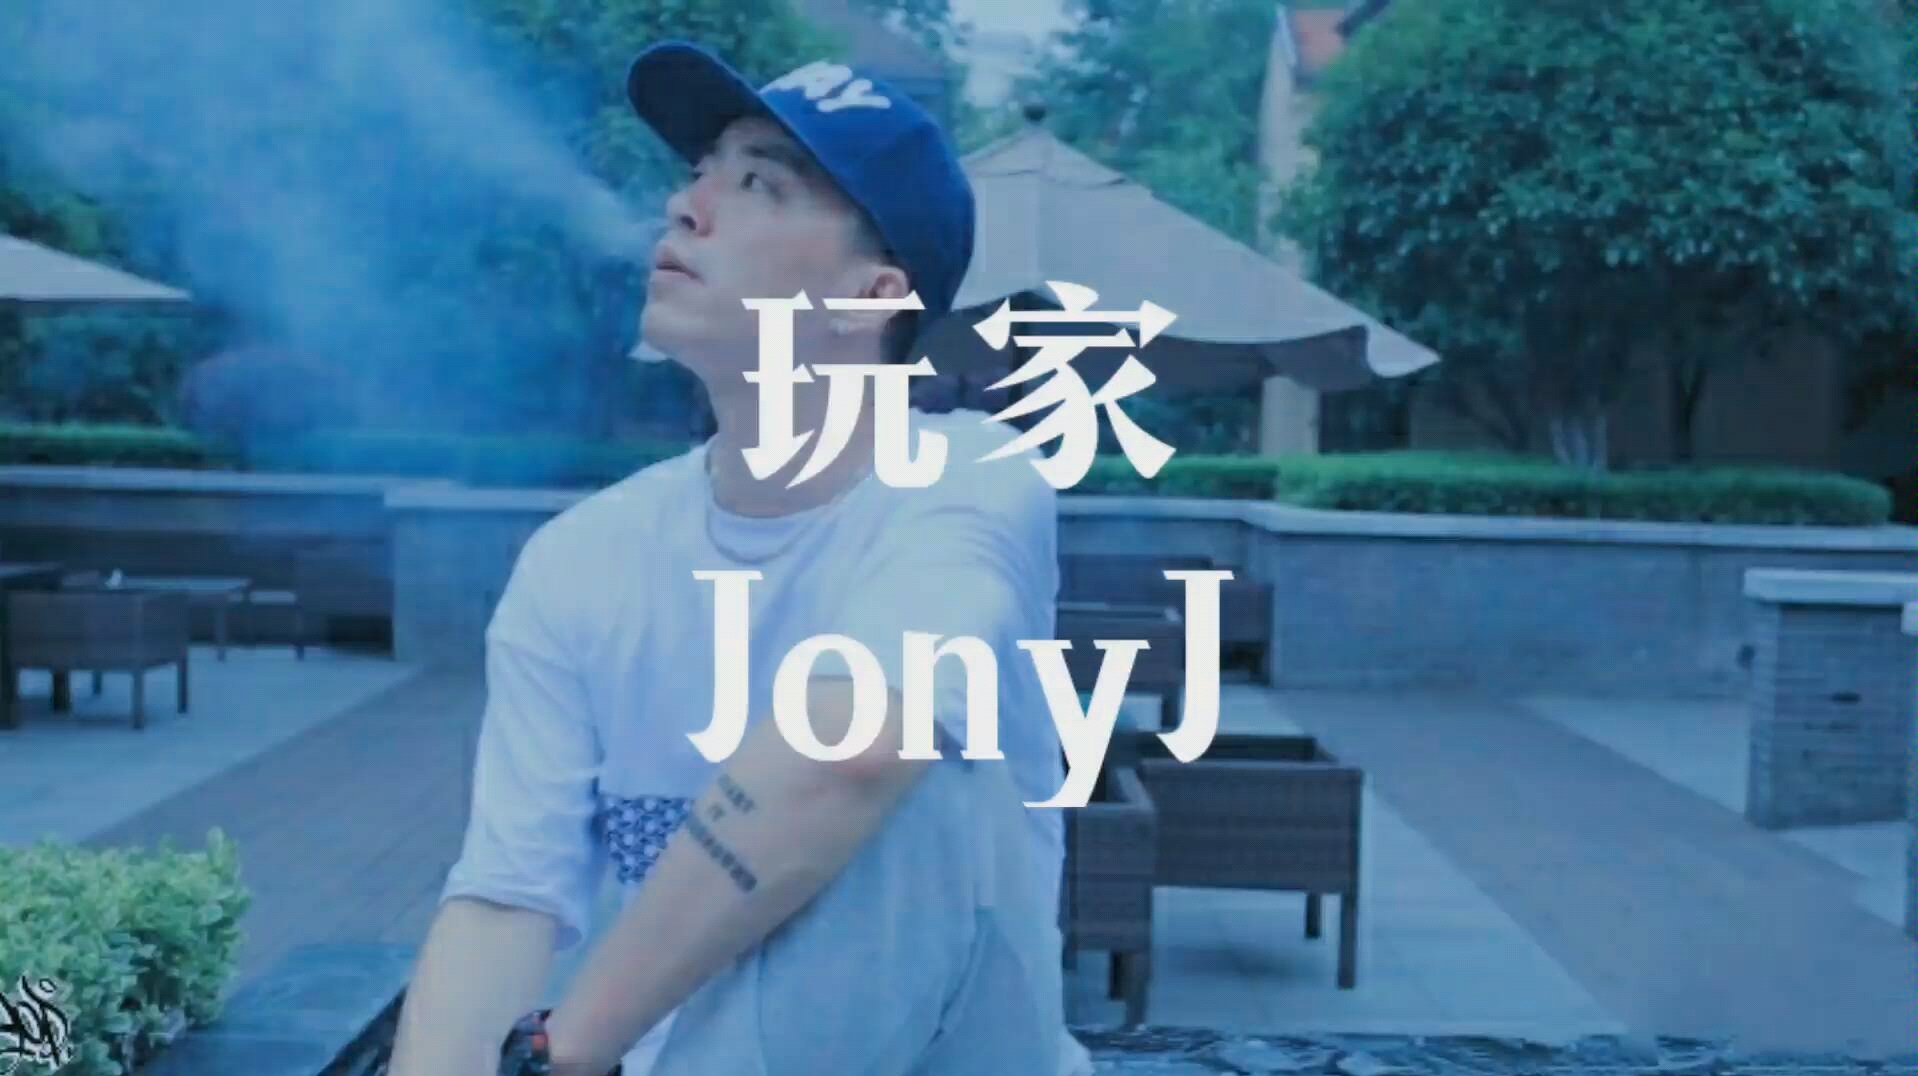 【Jony J】Jony j·《玩家》_哔哩哔哩_bilibili